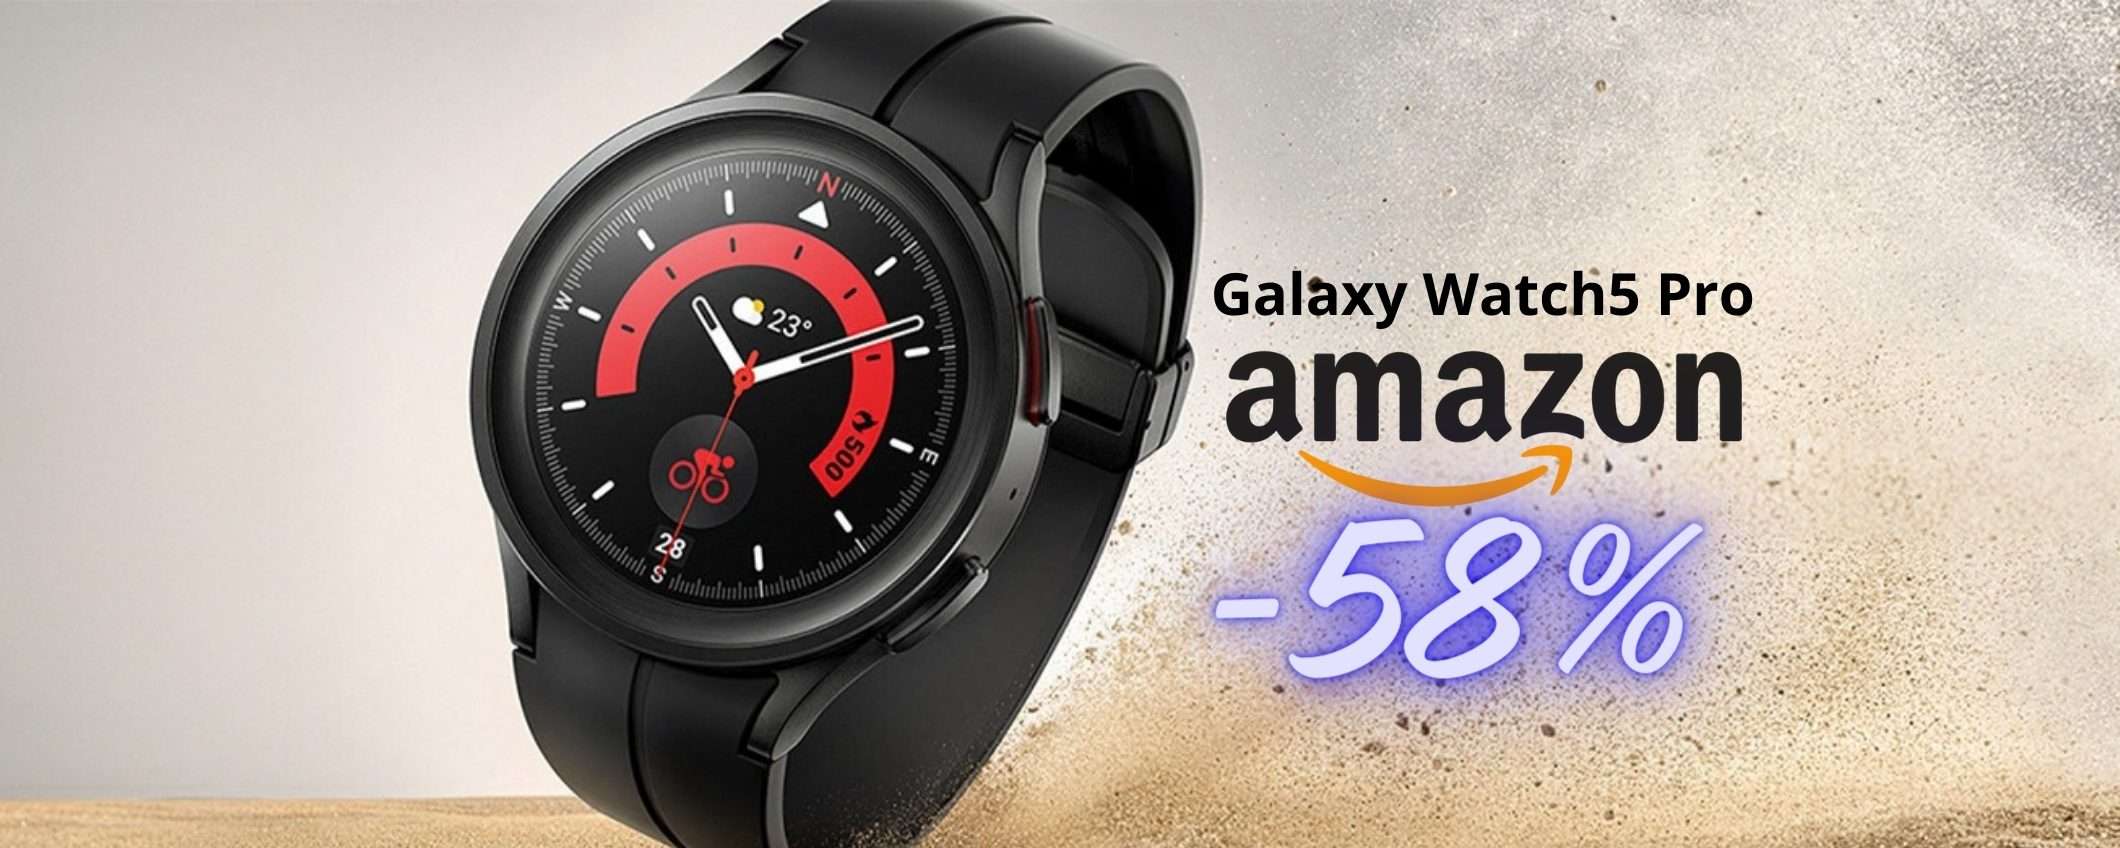 Samsung Galaxy Watch5 Pro a PREZZO da FAVOLA su Amazon (-58%)